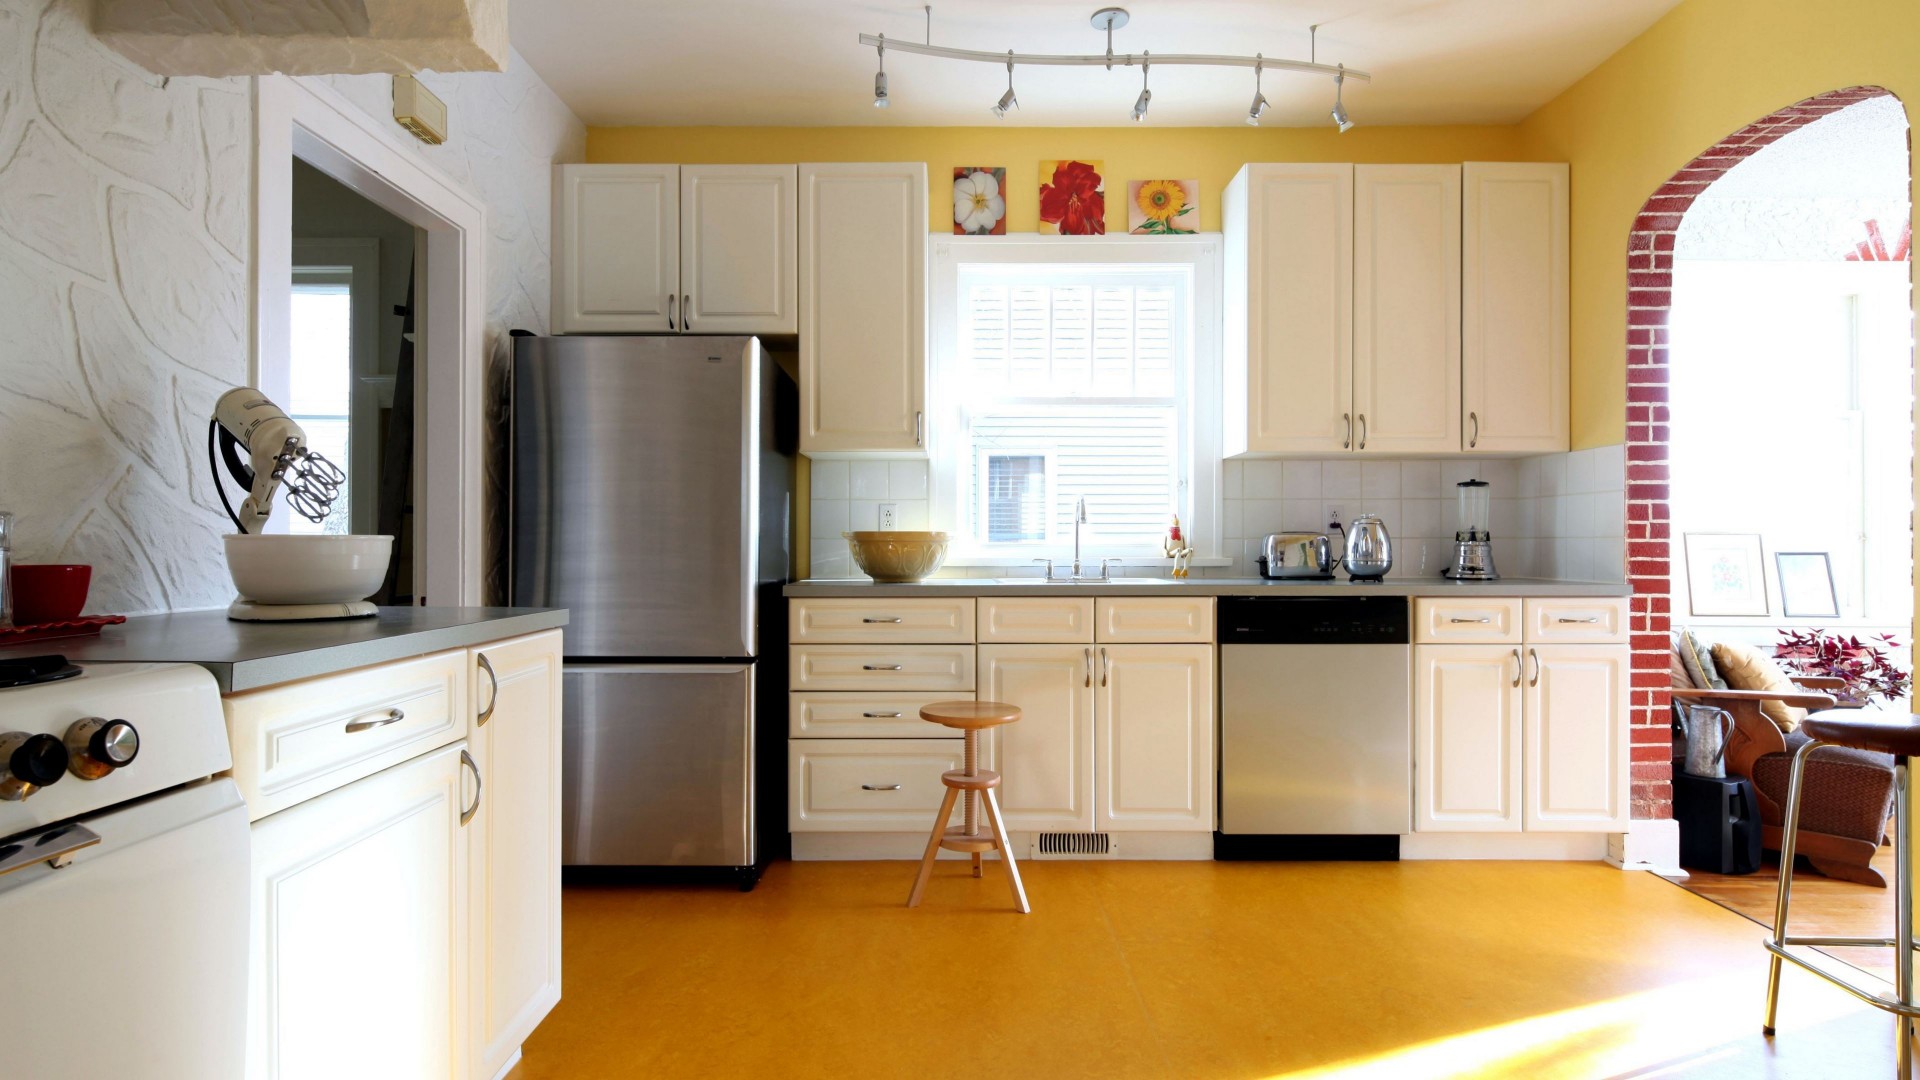 Interior Simple Kitchen Design / Simple Kitchen Design Ideas - Kitchen